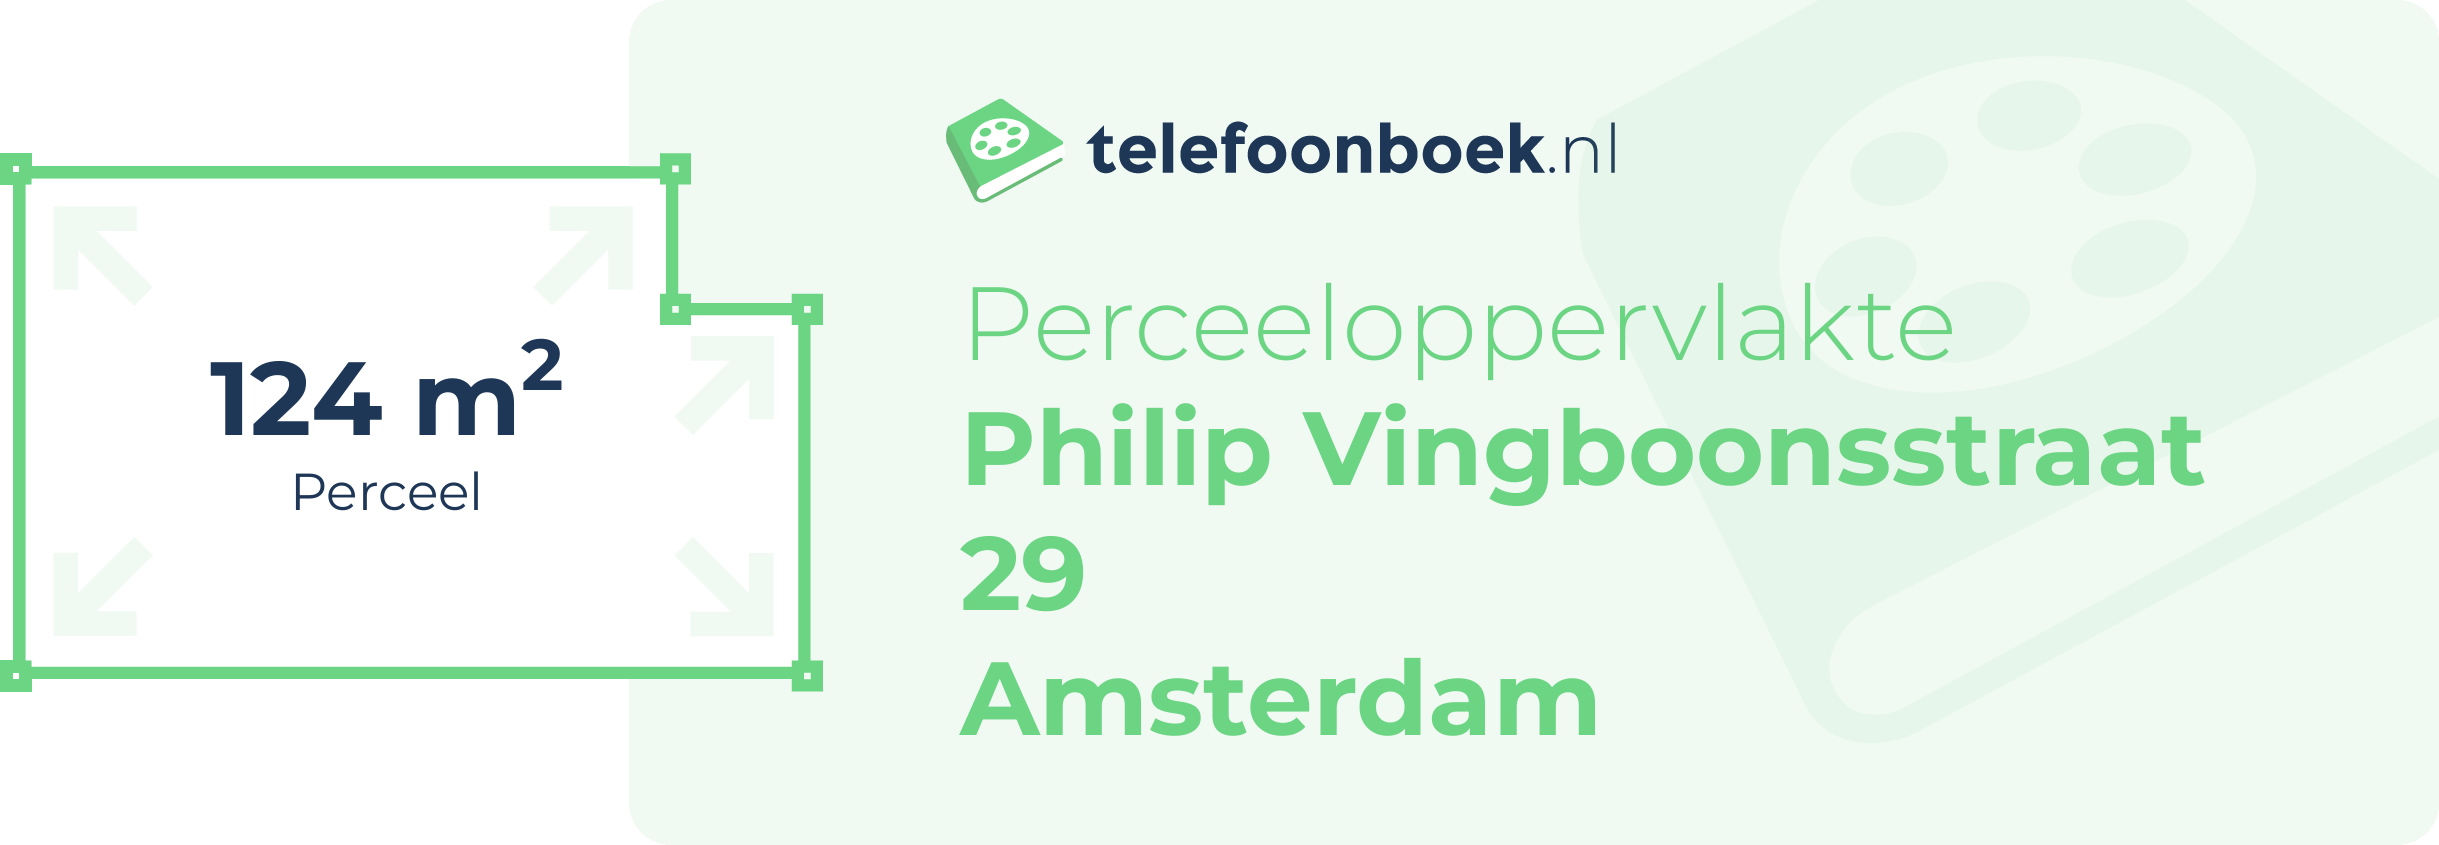 Perceeloppervlakte Philip Vingboonsstraat 29 Amsterdam